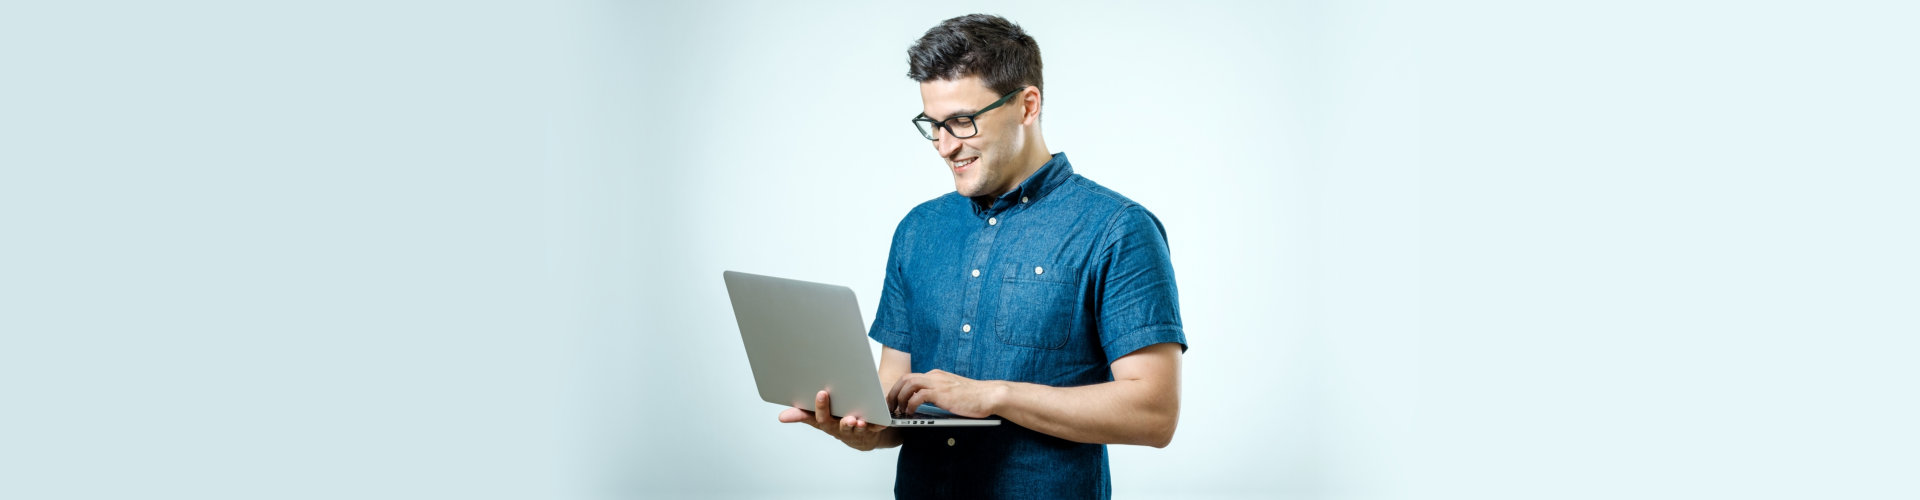 a man on a laptop